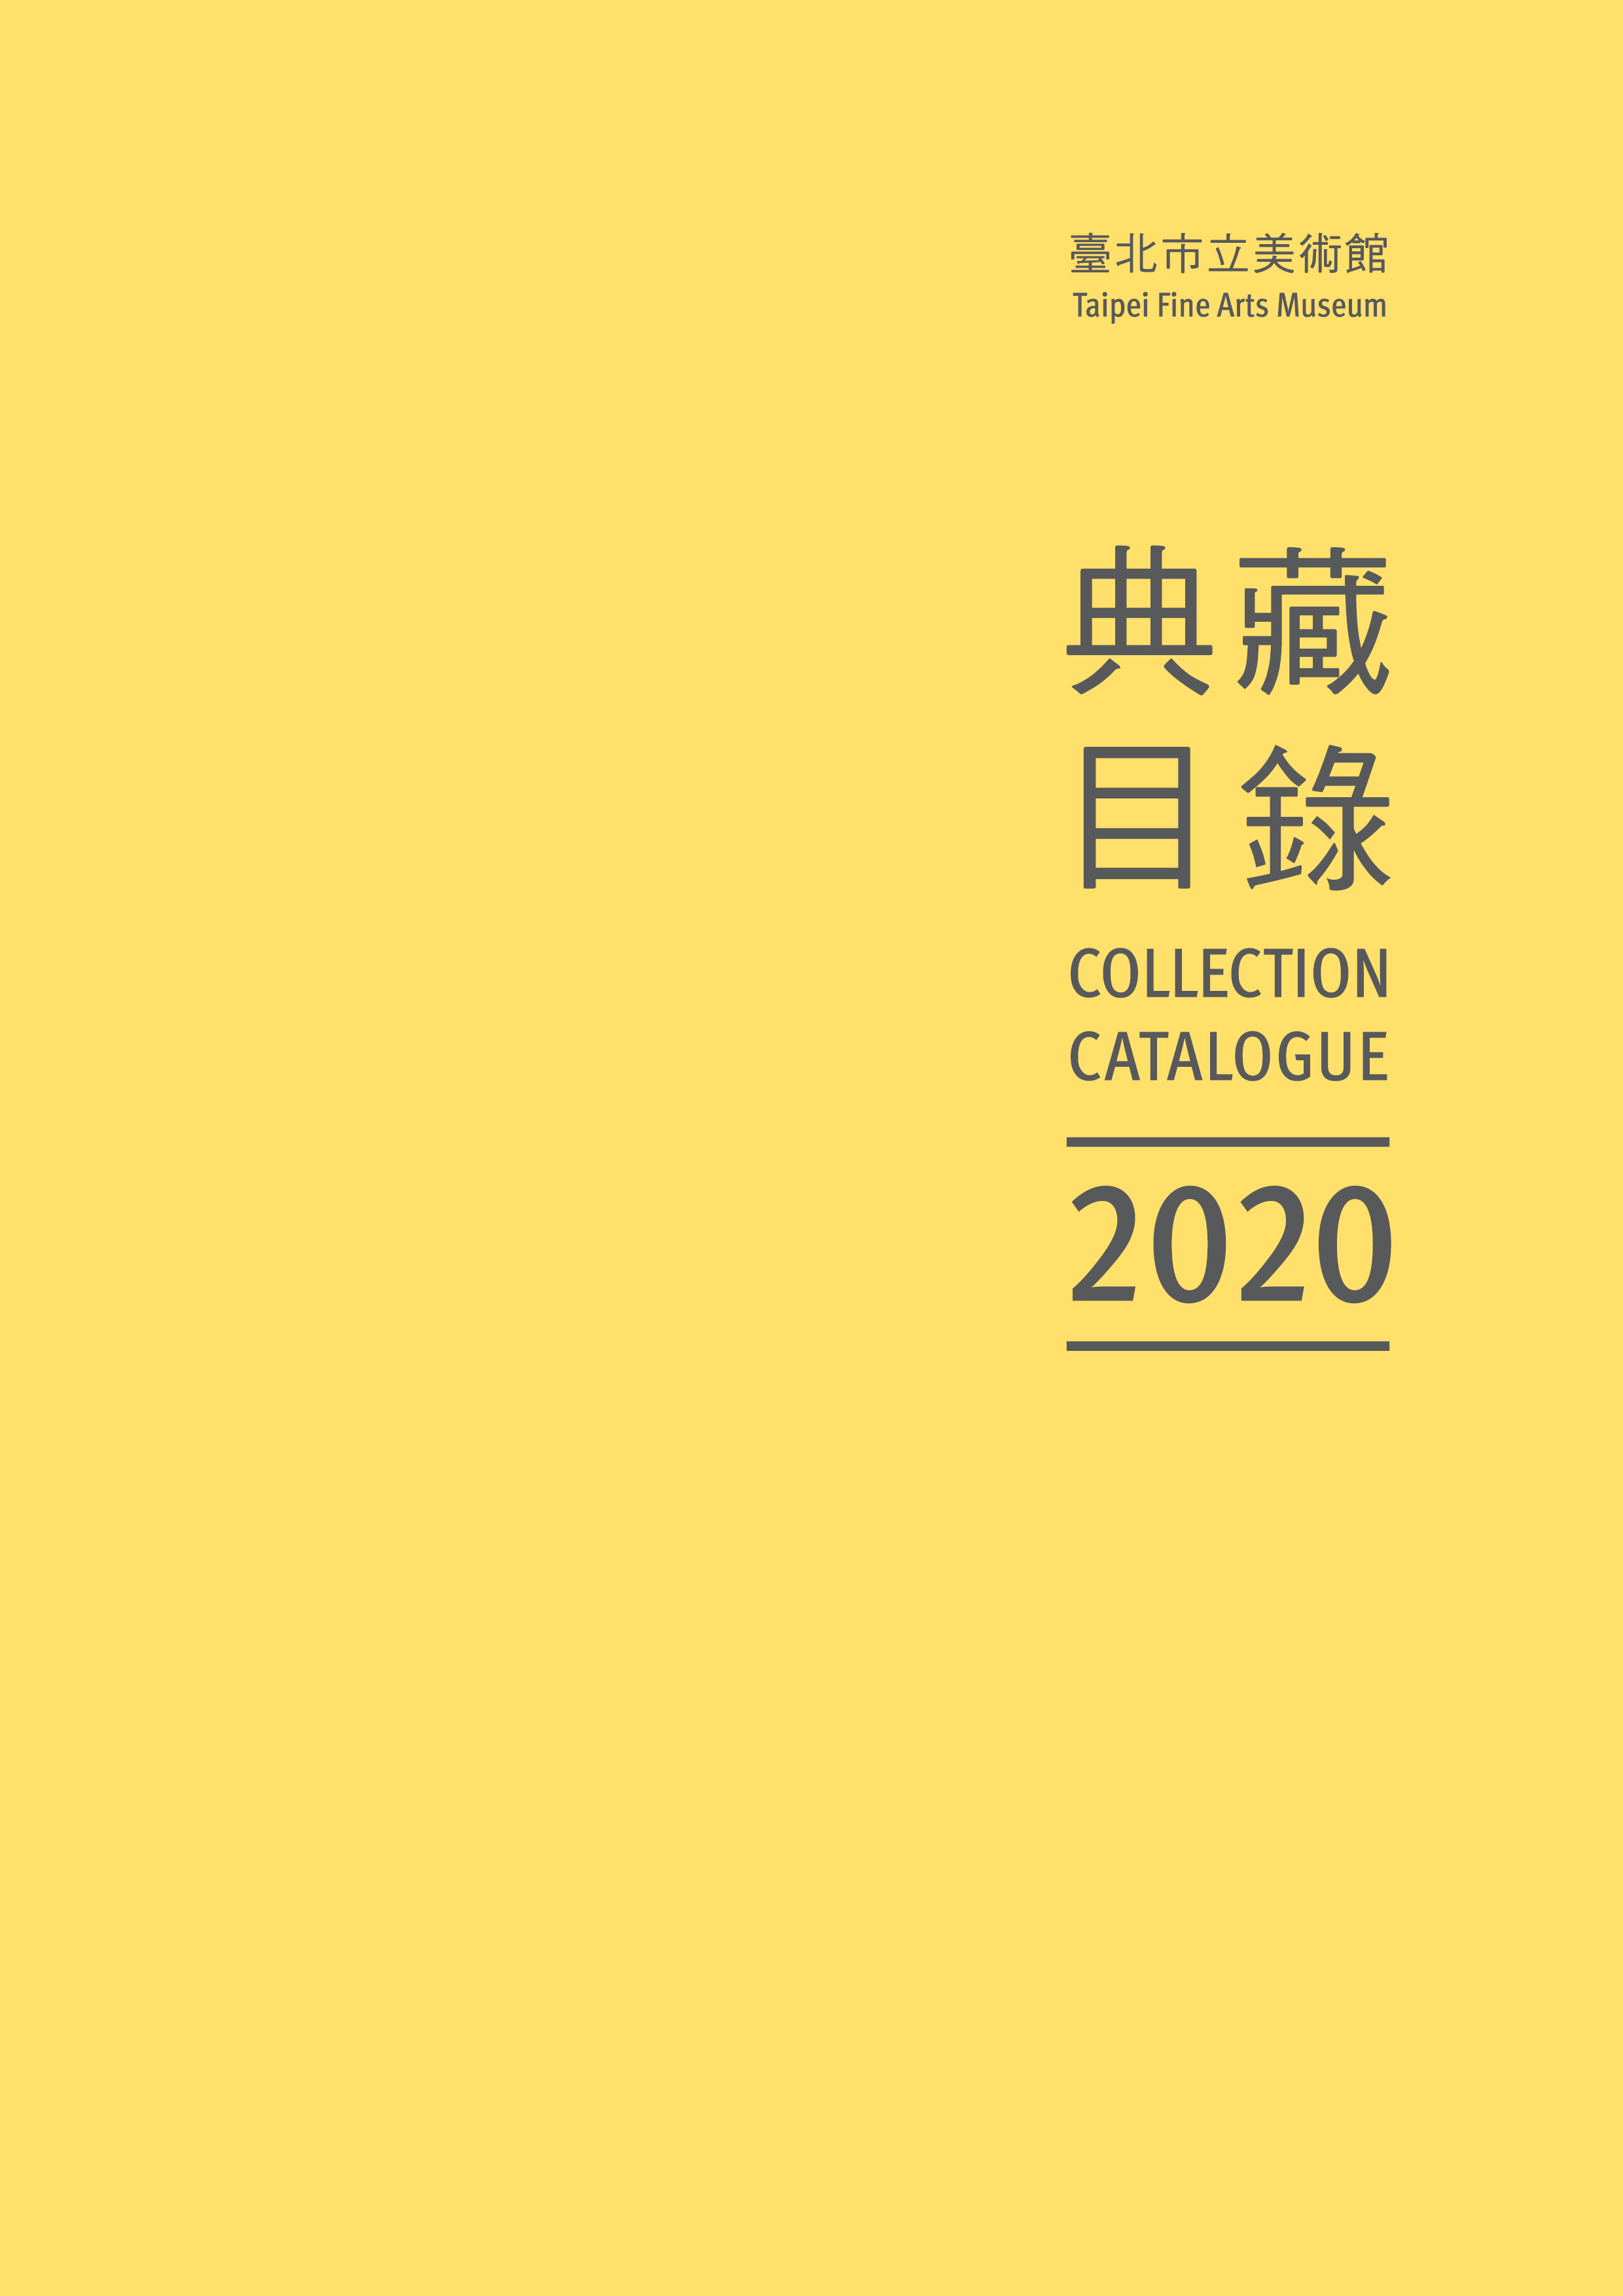 臺北市立美術館典藏目錄109(2020) 的圖說